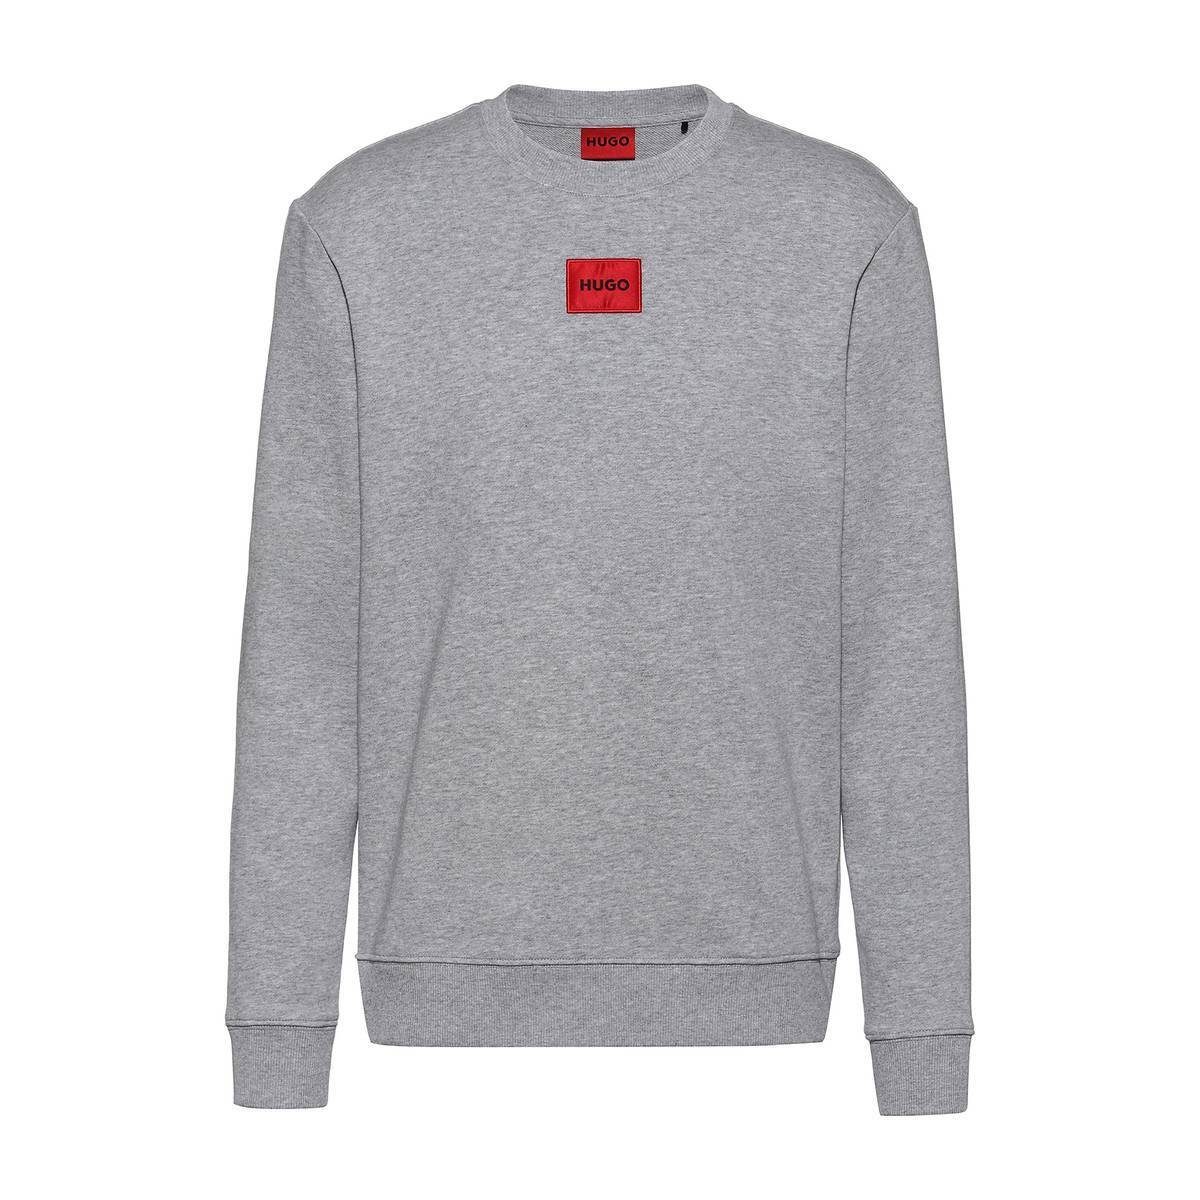 HUGO Sweatshirt Herren Sweater, Diragol212 - Sweatshirt, Rundhals Dunkelgrau